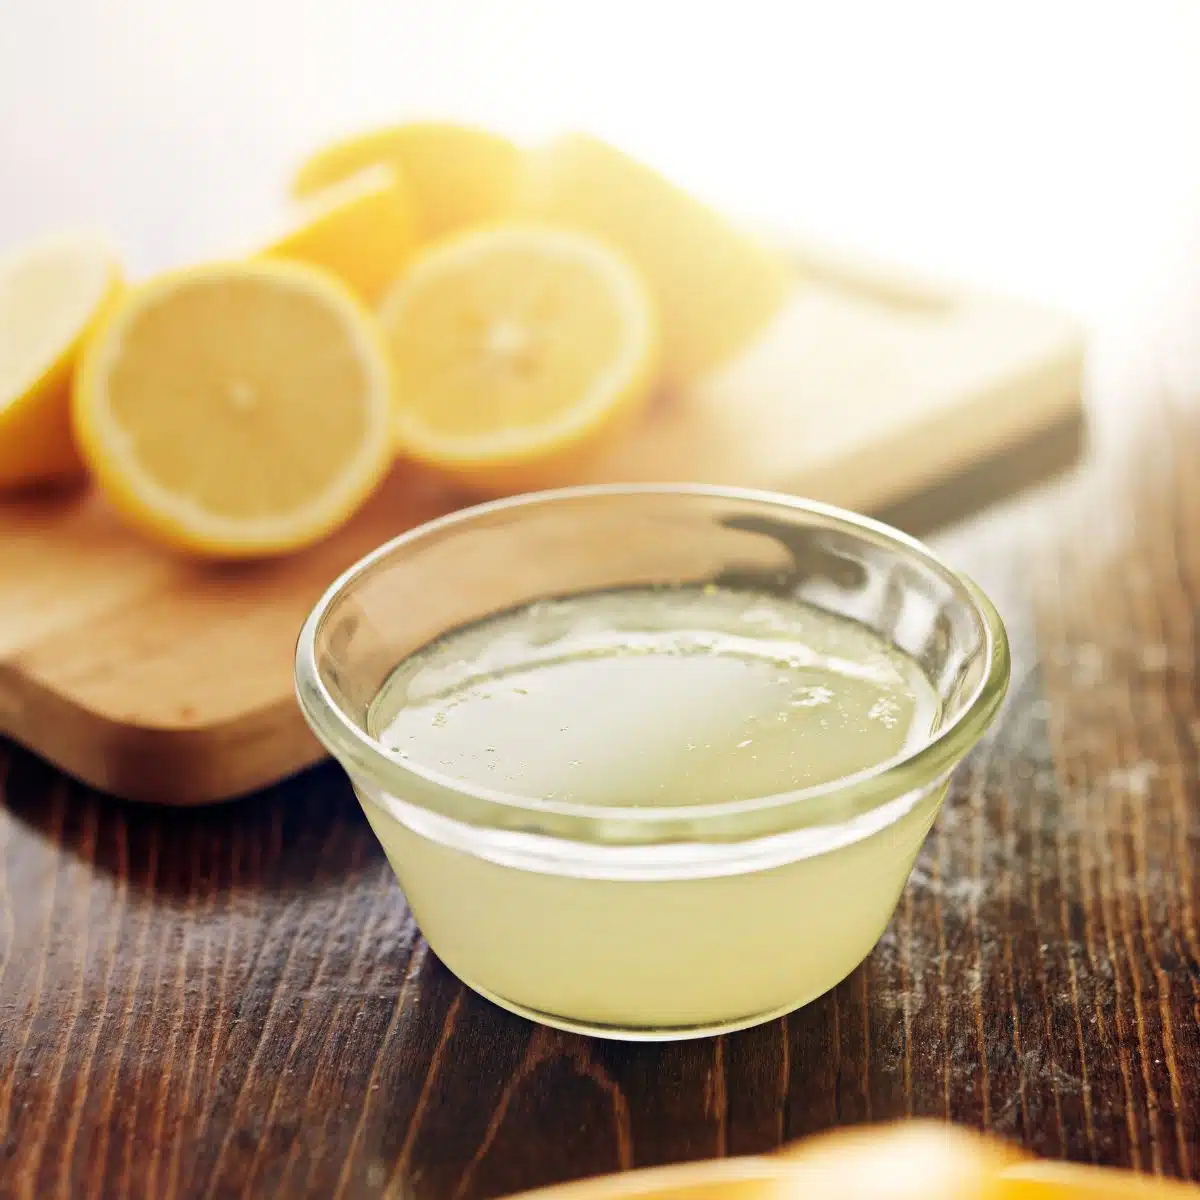 Imagen cuadrada que muestra limones y jugo de limón.